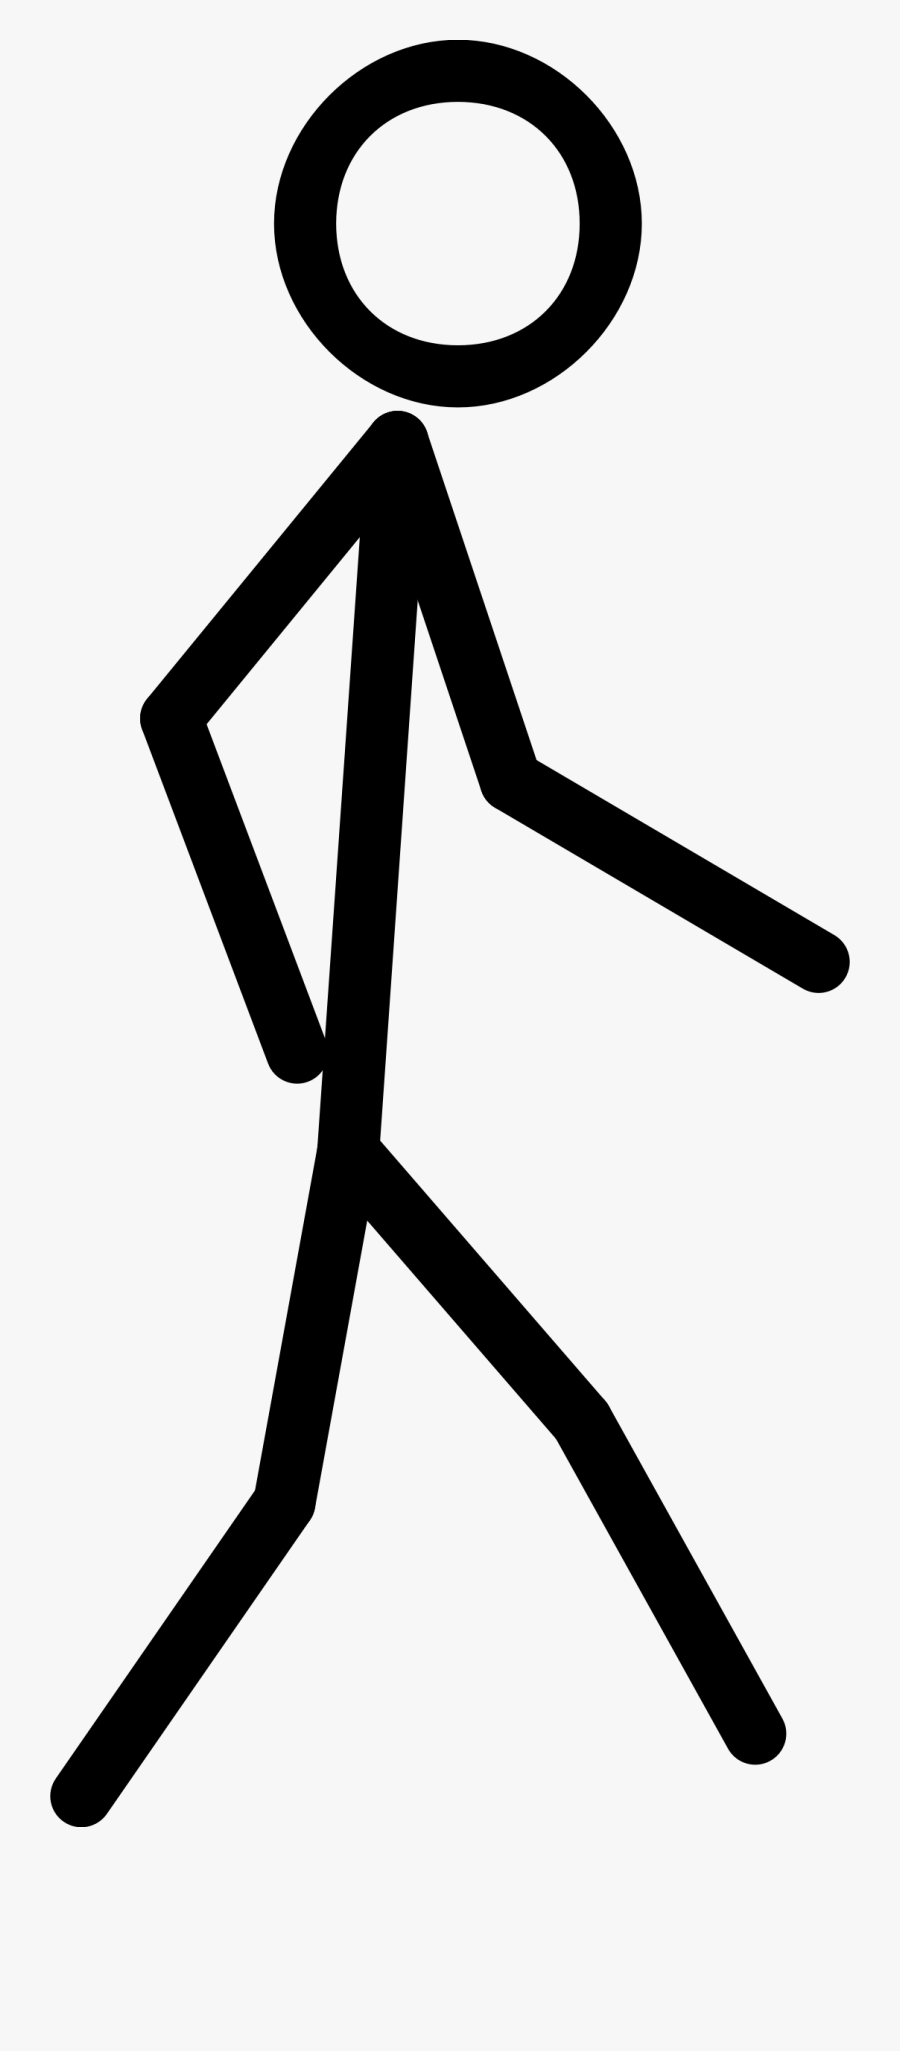 Walking Stick Figure Clipart, Transparent Clipart